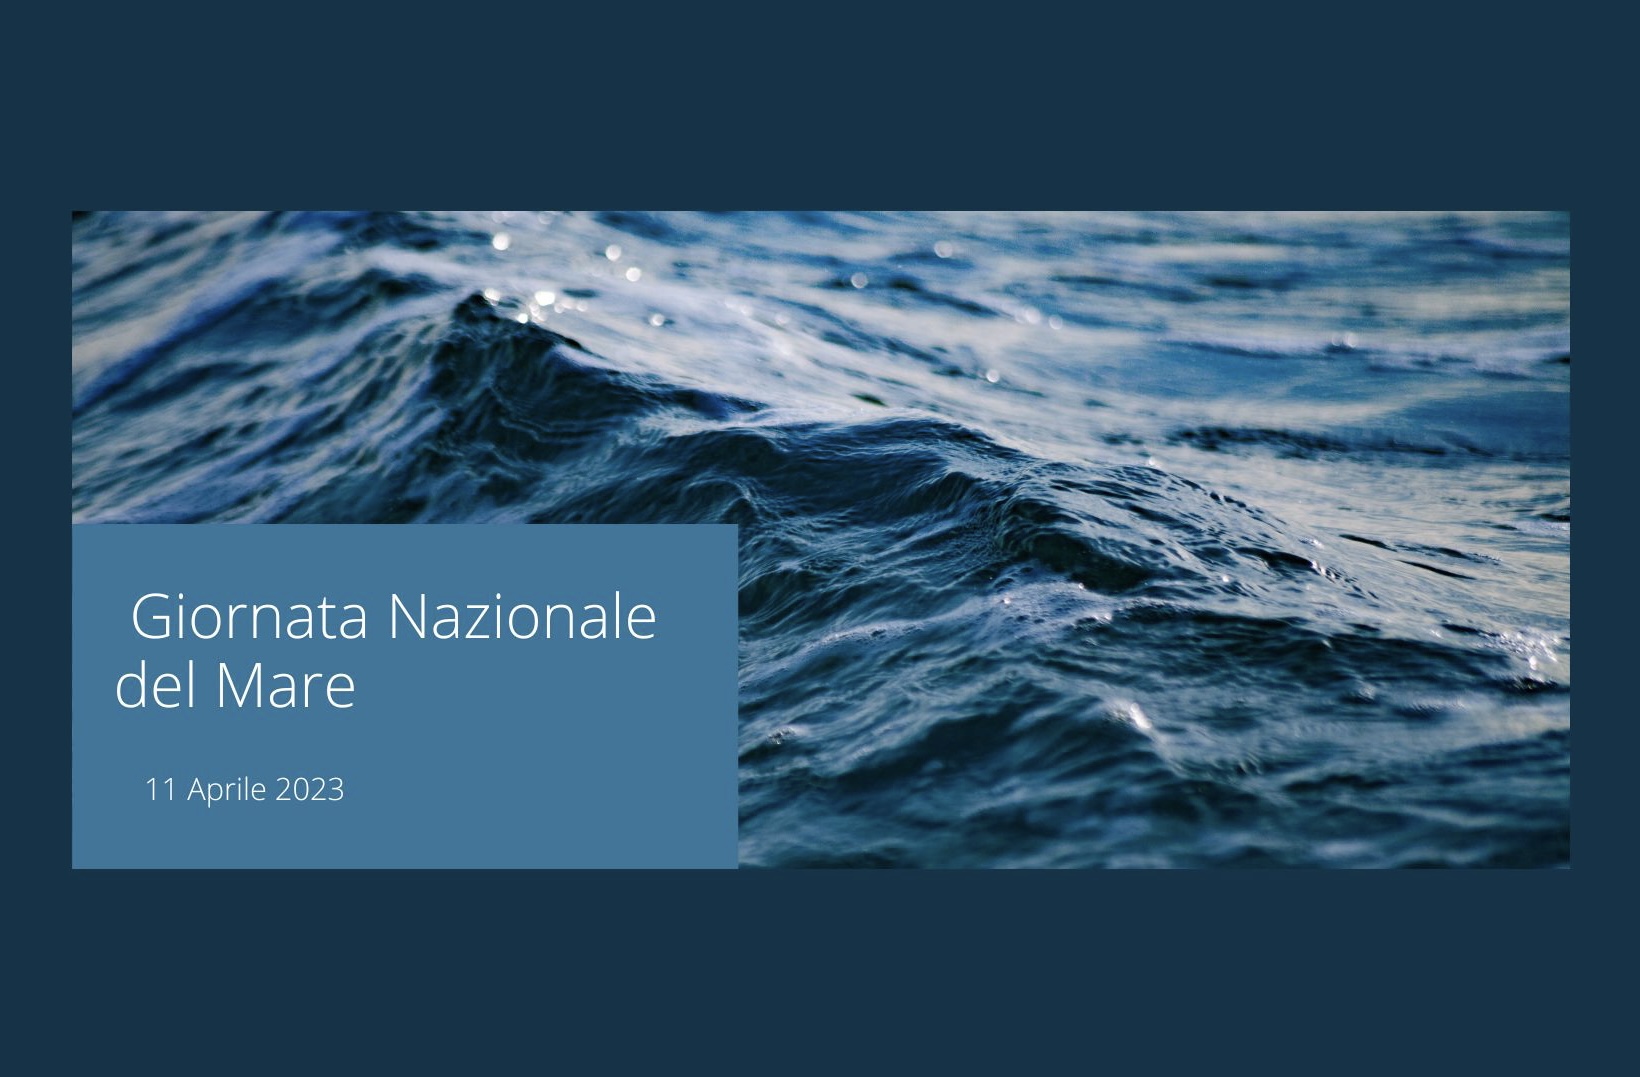 Giornata nazionale del mare: settore strategico per la nostra economia. Servono politiche di sistema